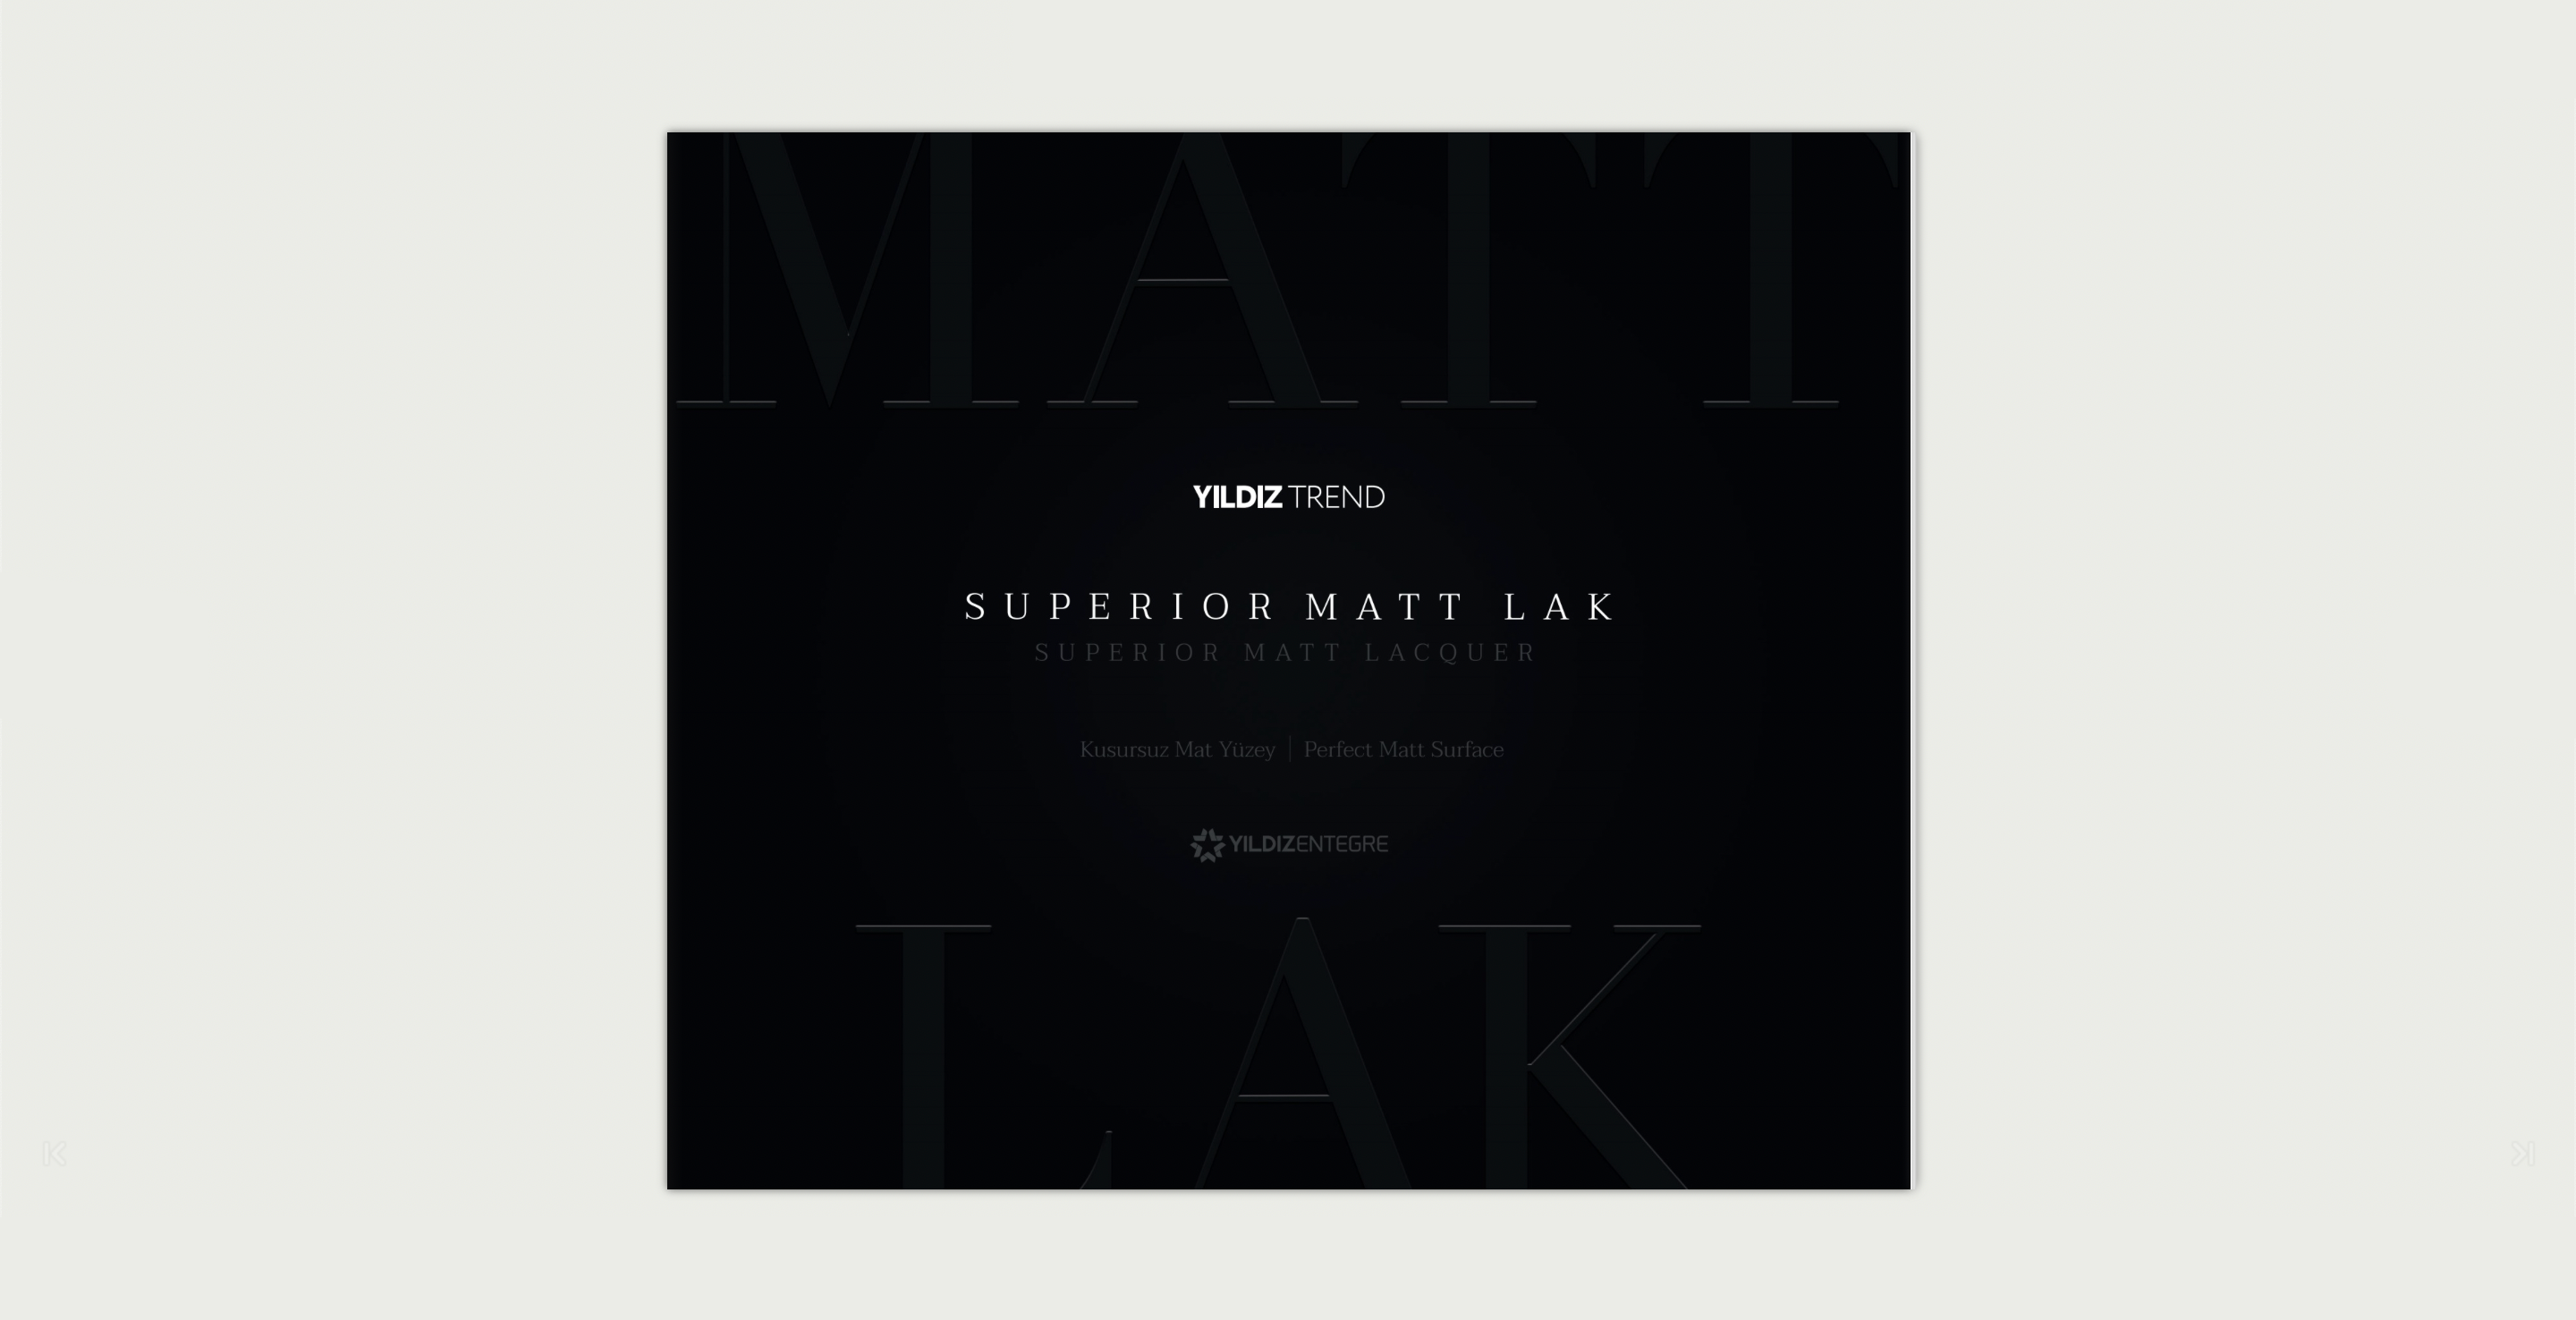 Superior Matt Lak